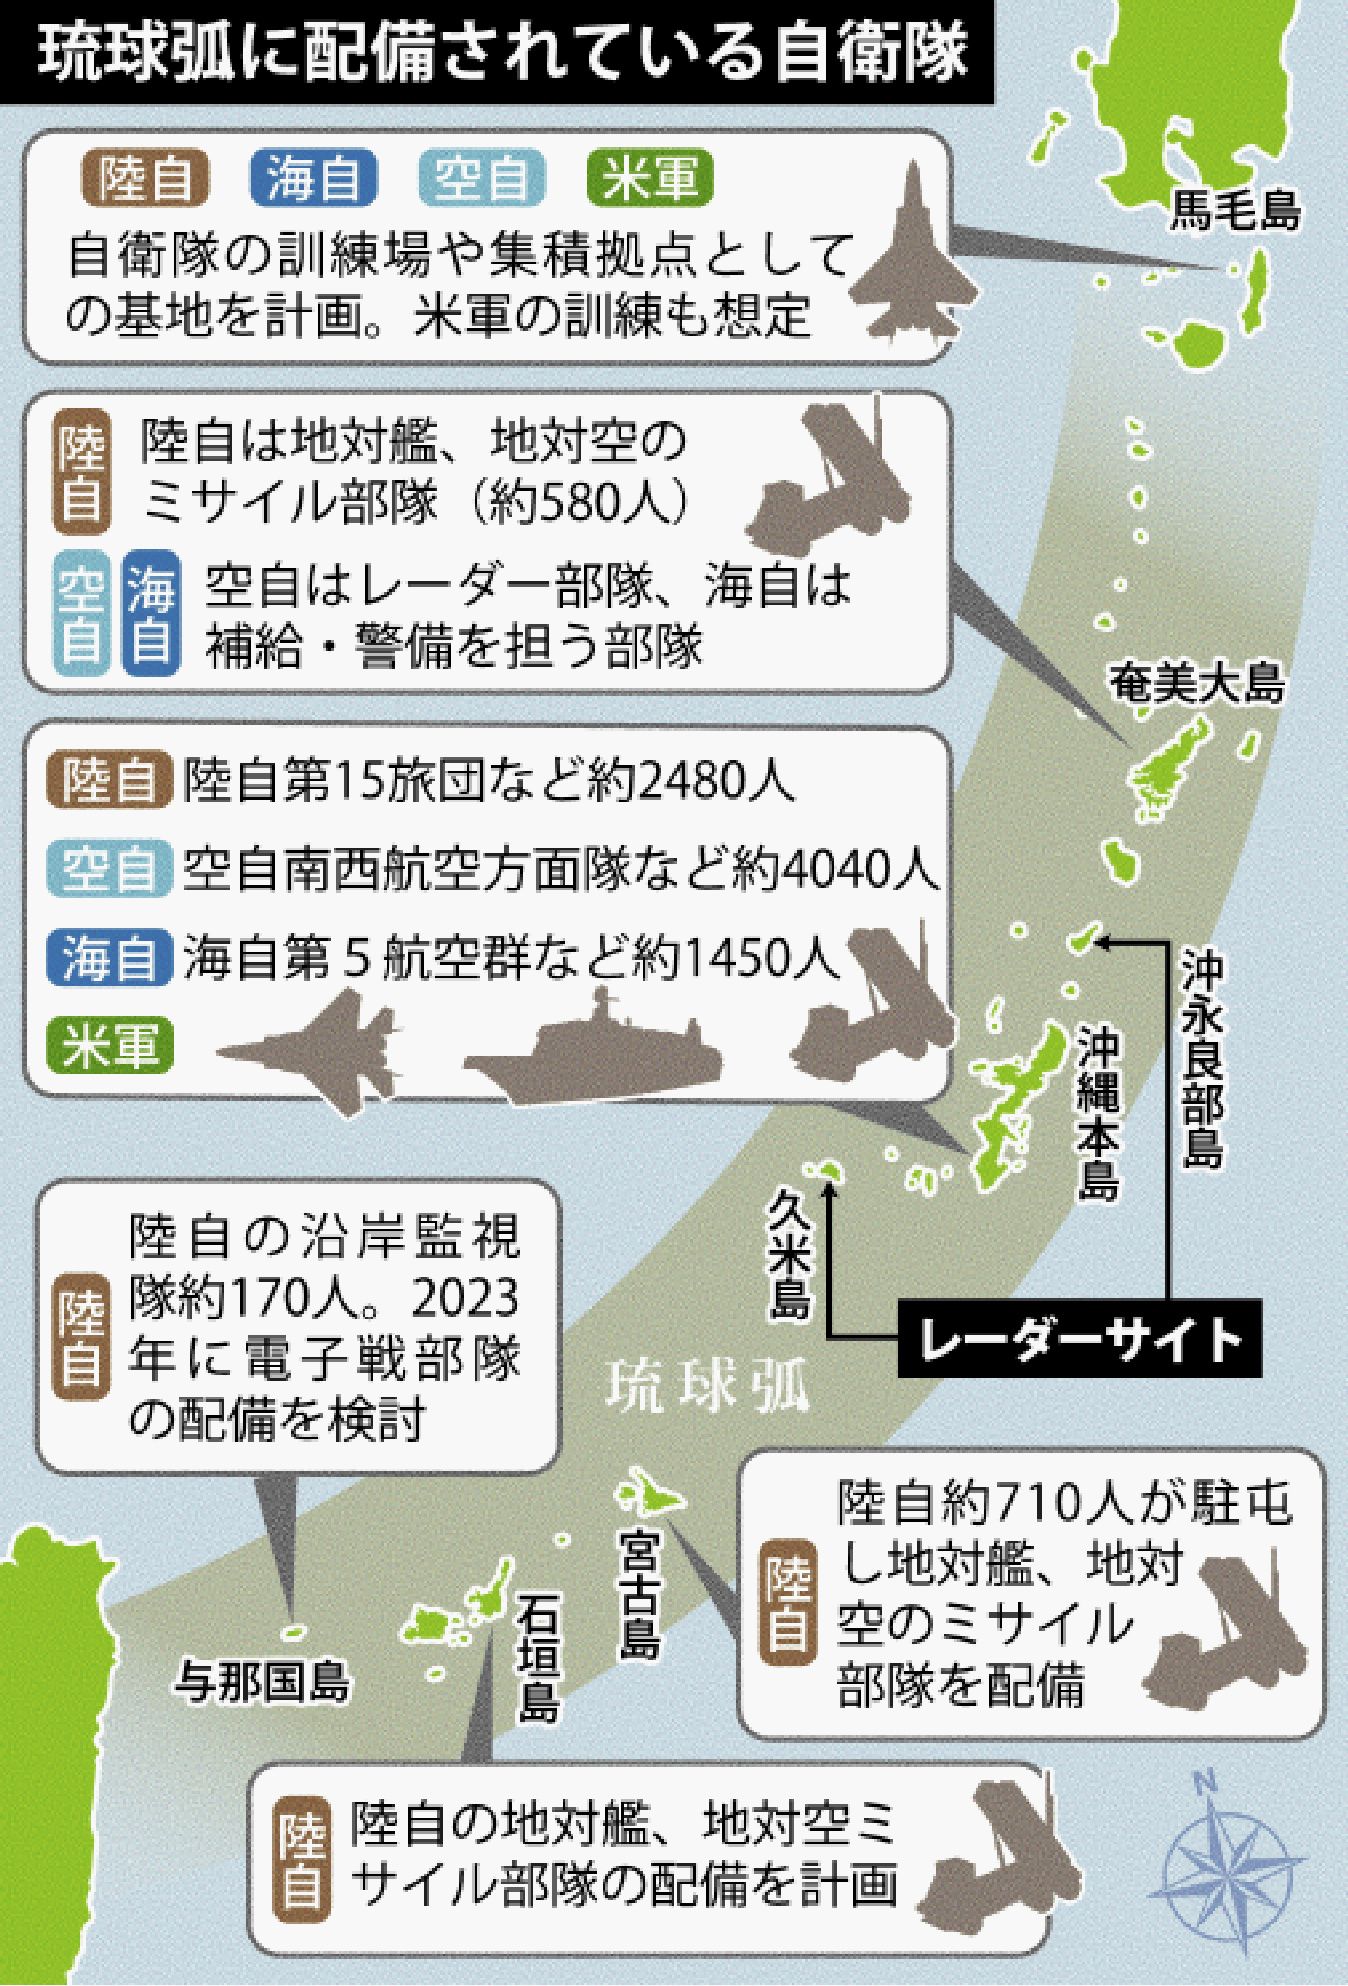 台湾有事の可能性、識者はどう見る 「最大のポイントはミサイル」沖縄